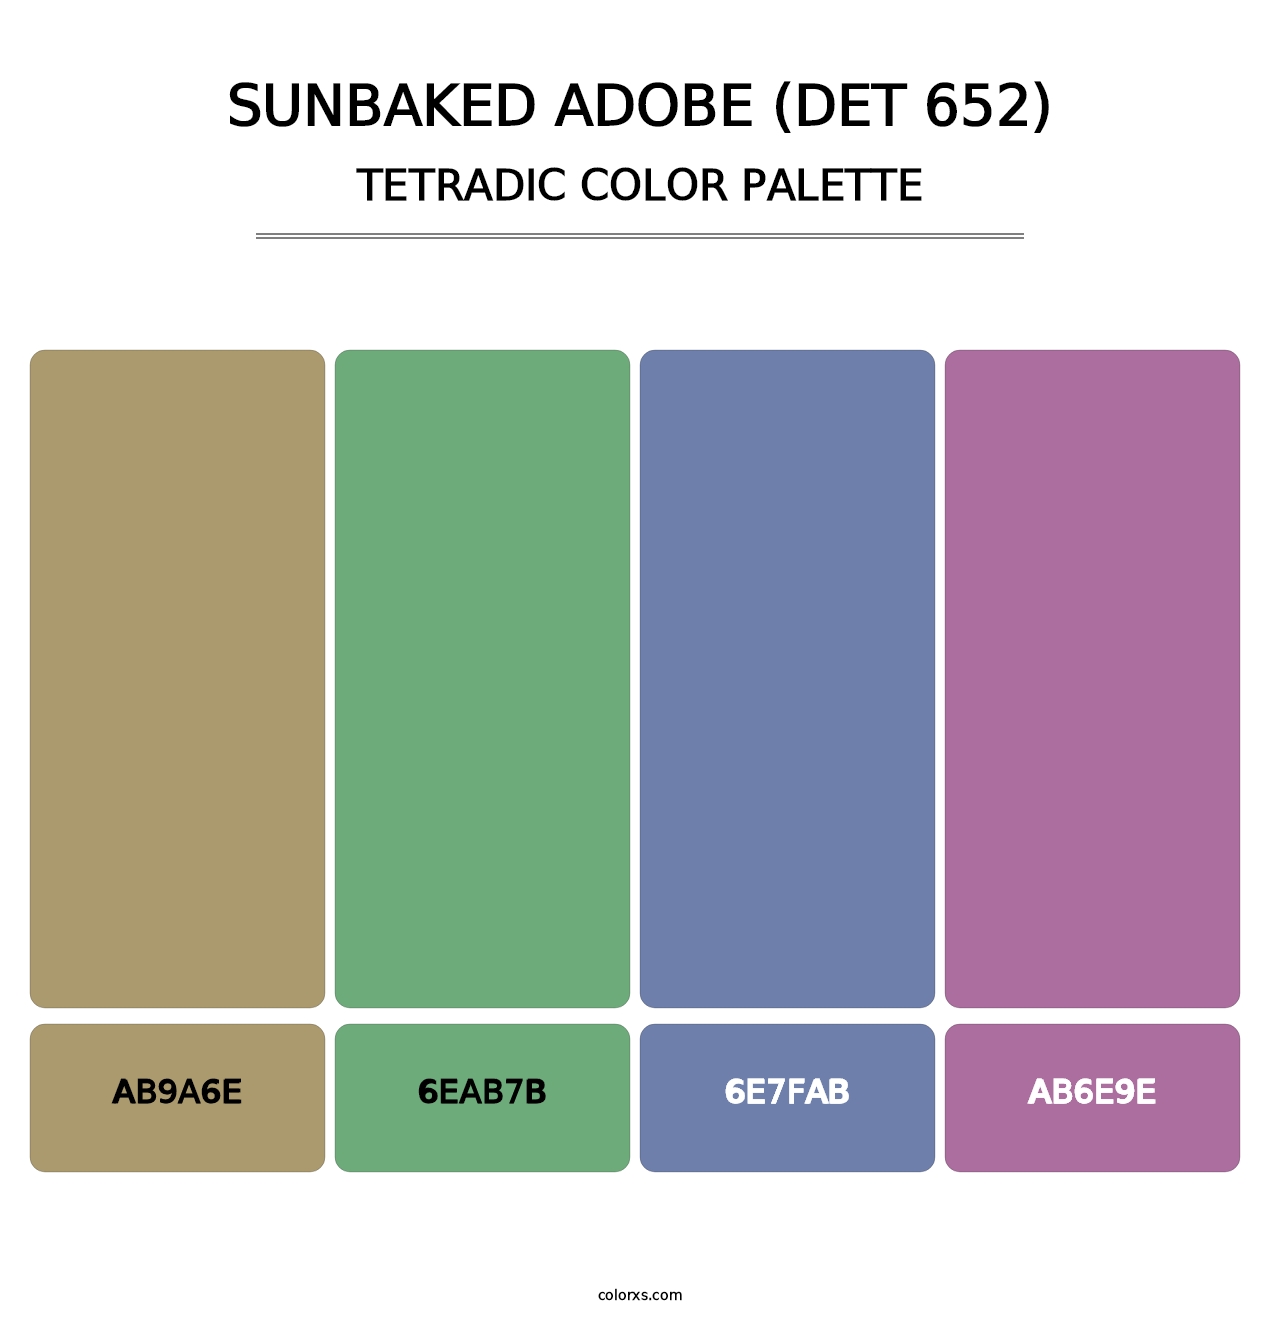 Sunbaked Adobe (DET 652) - Tetradic Color Palette